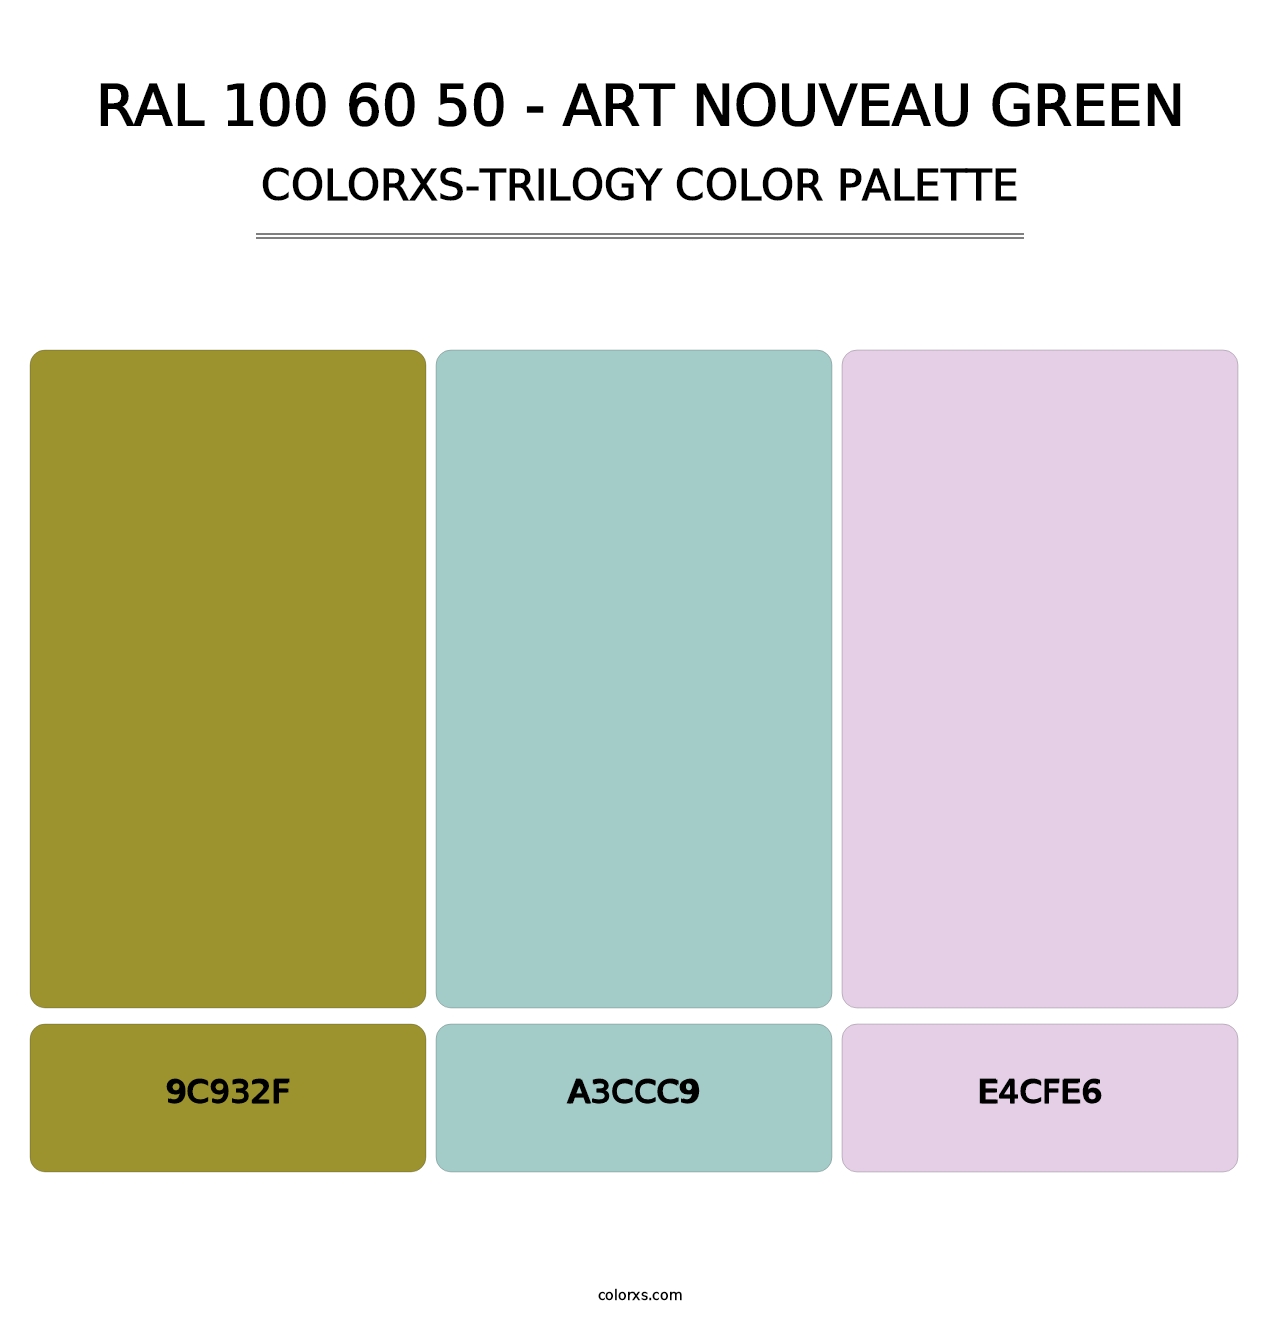 RAL 100 60 50 - Art Nouveau Green - Colorxs Trilogy Palette